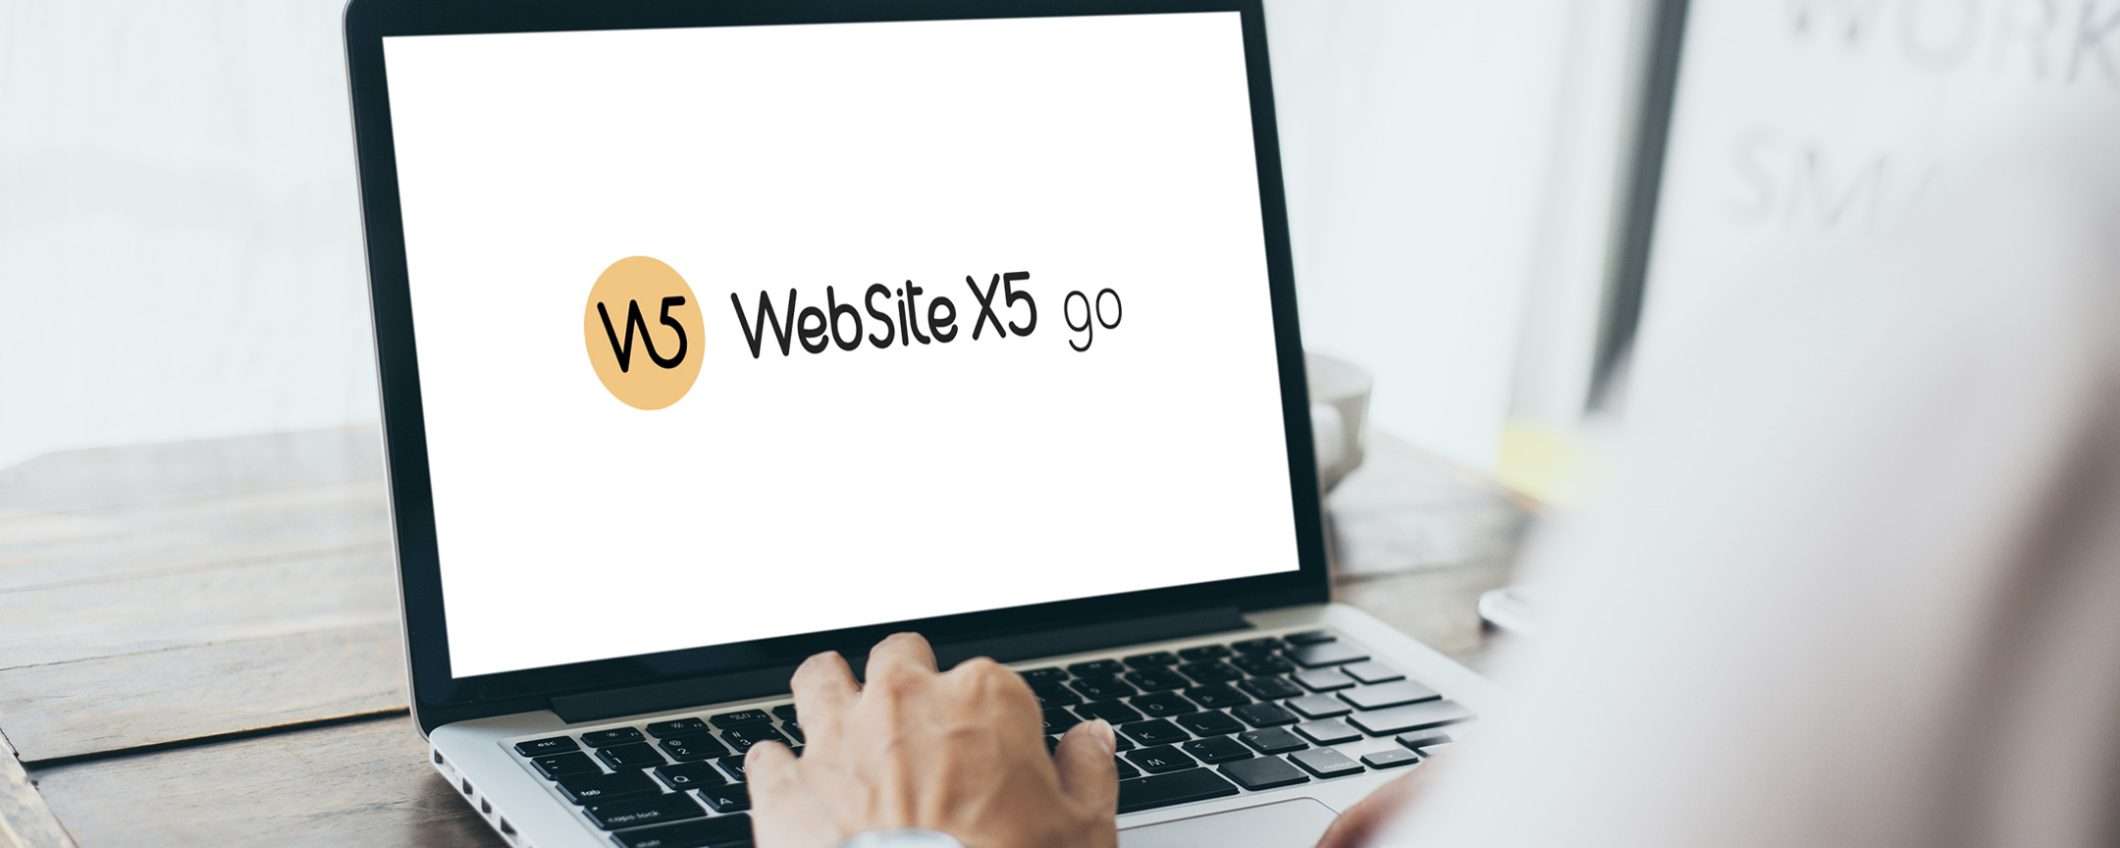 WebSite X5 di Incomedia: la soluzione per un sito web professionale